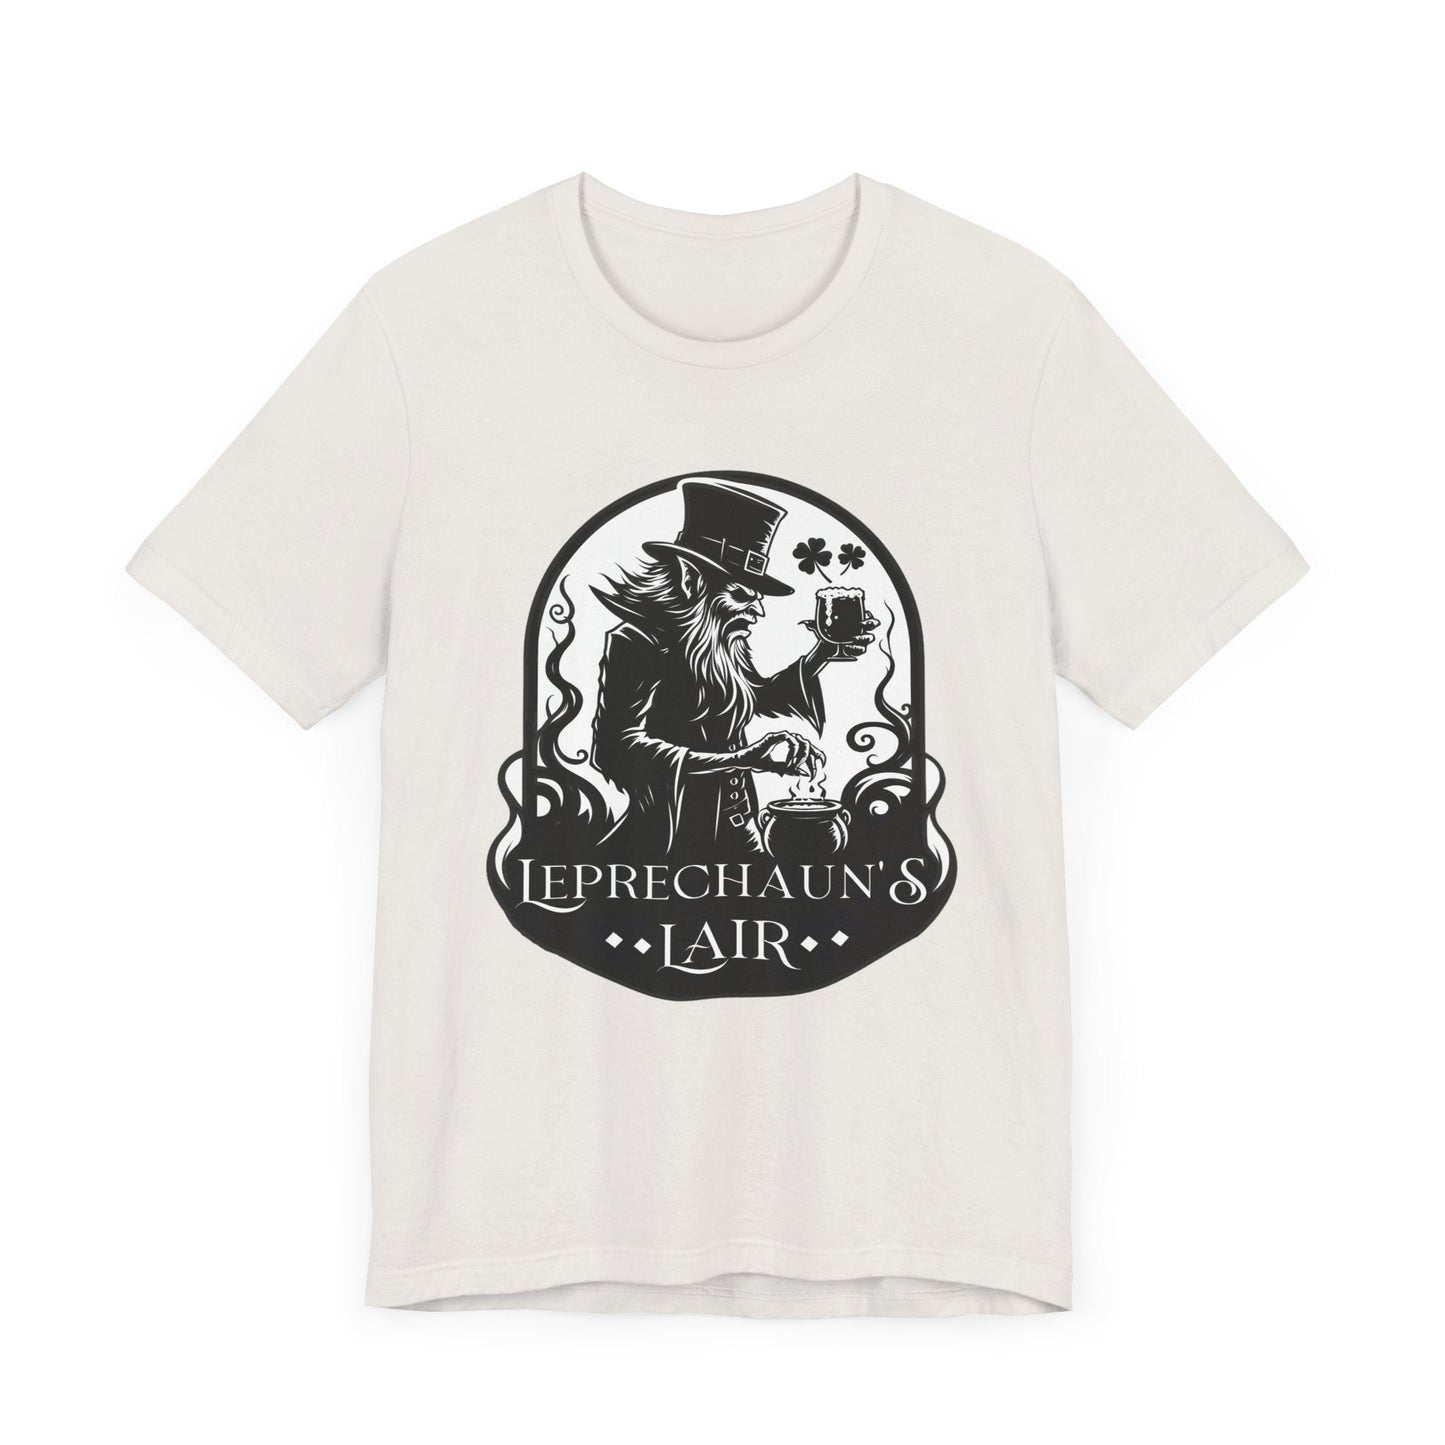 Leprechaun's Lair Spooky St Patrick's Day Tee ShirtT - ShirtVTZdesignsVintage WhiteXSCottonCrew neckday